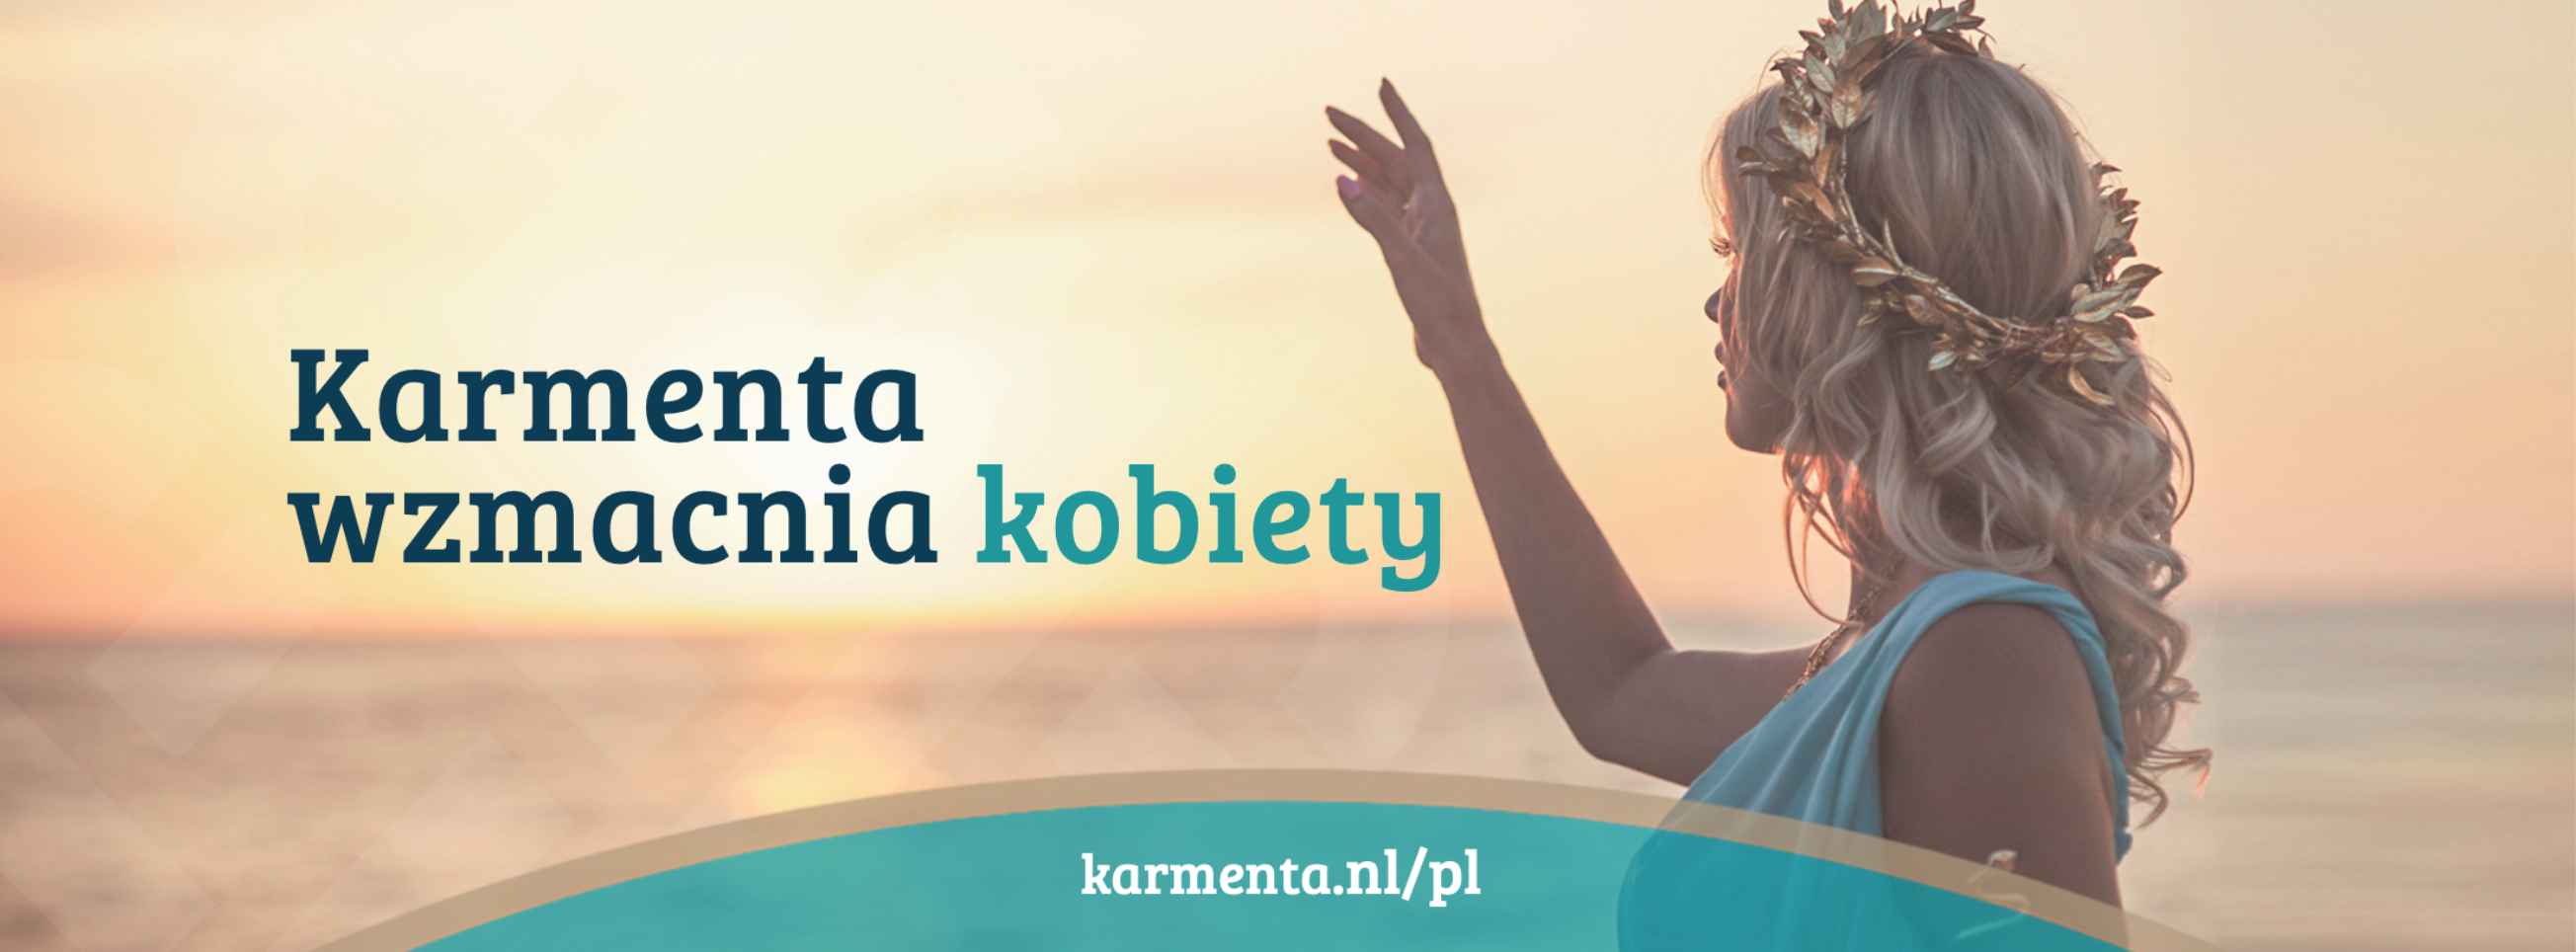 Karmenta's Polish consultation hours start in November